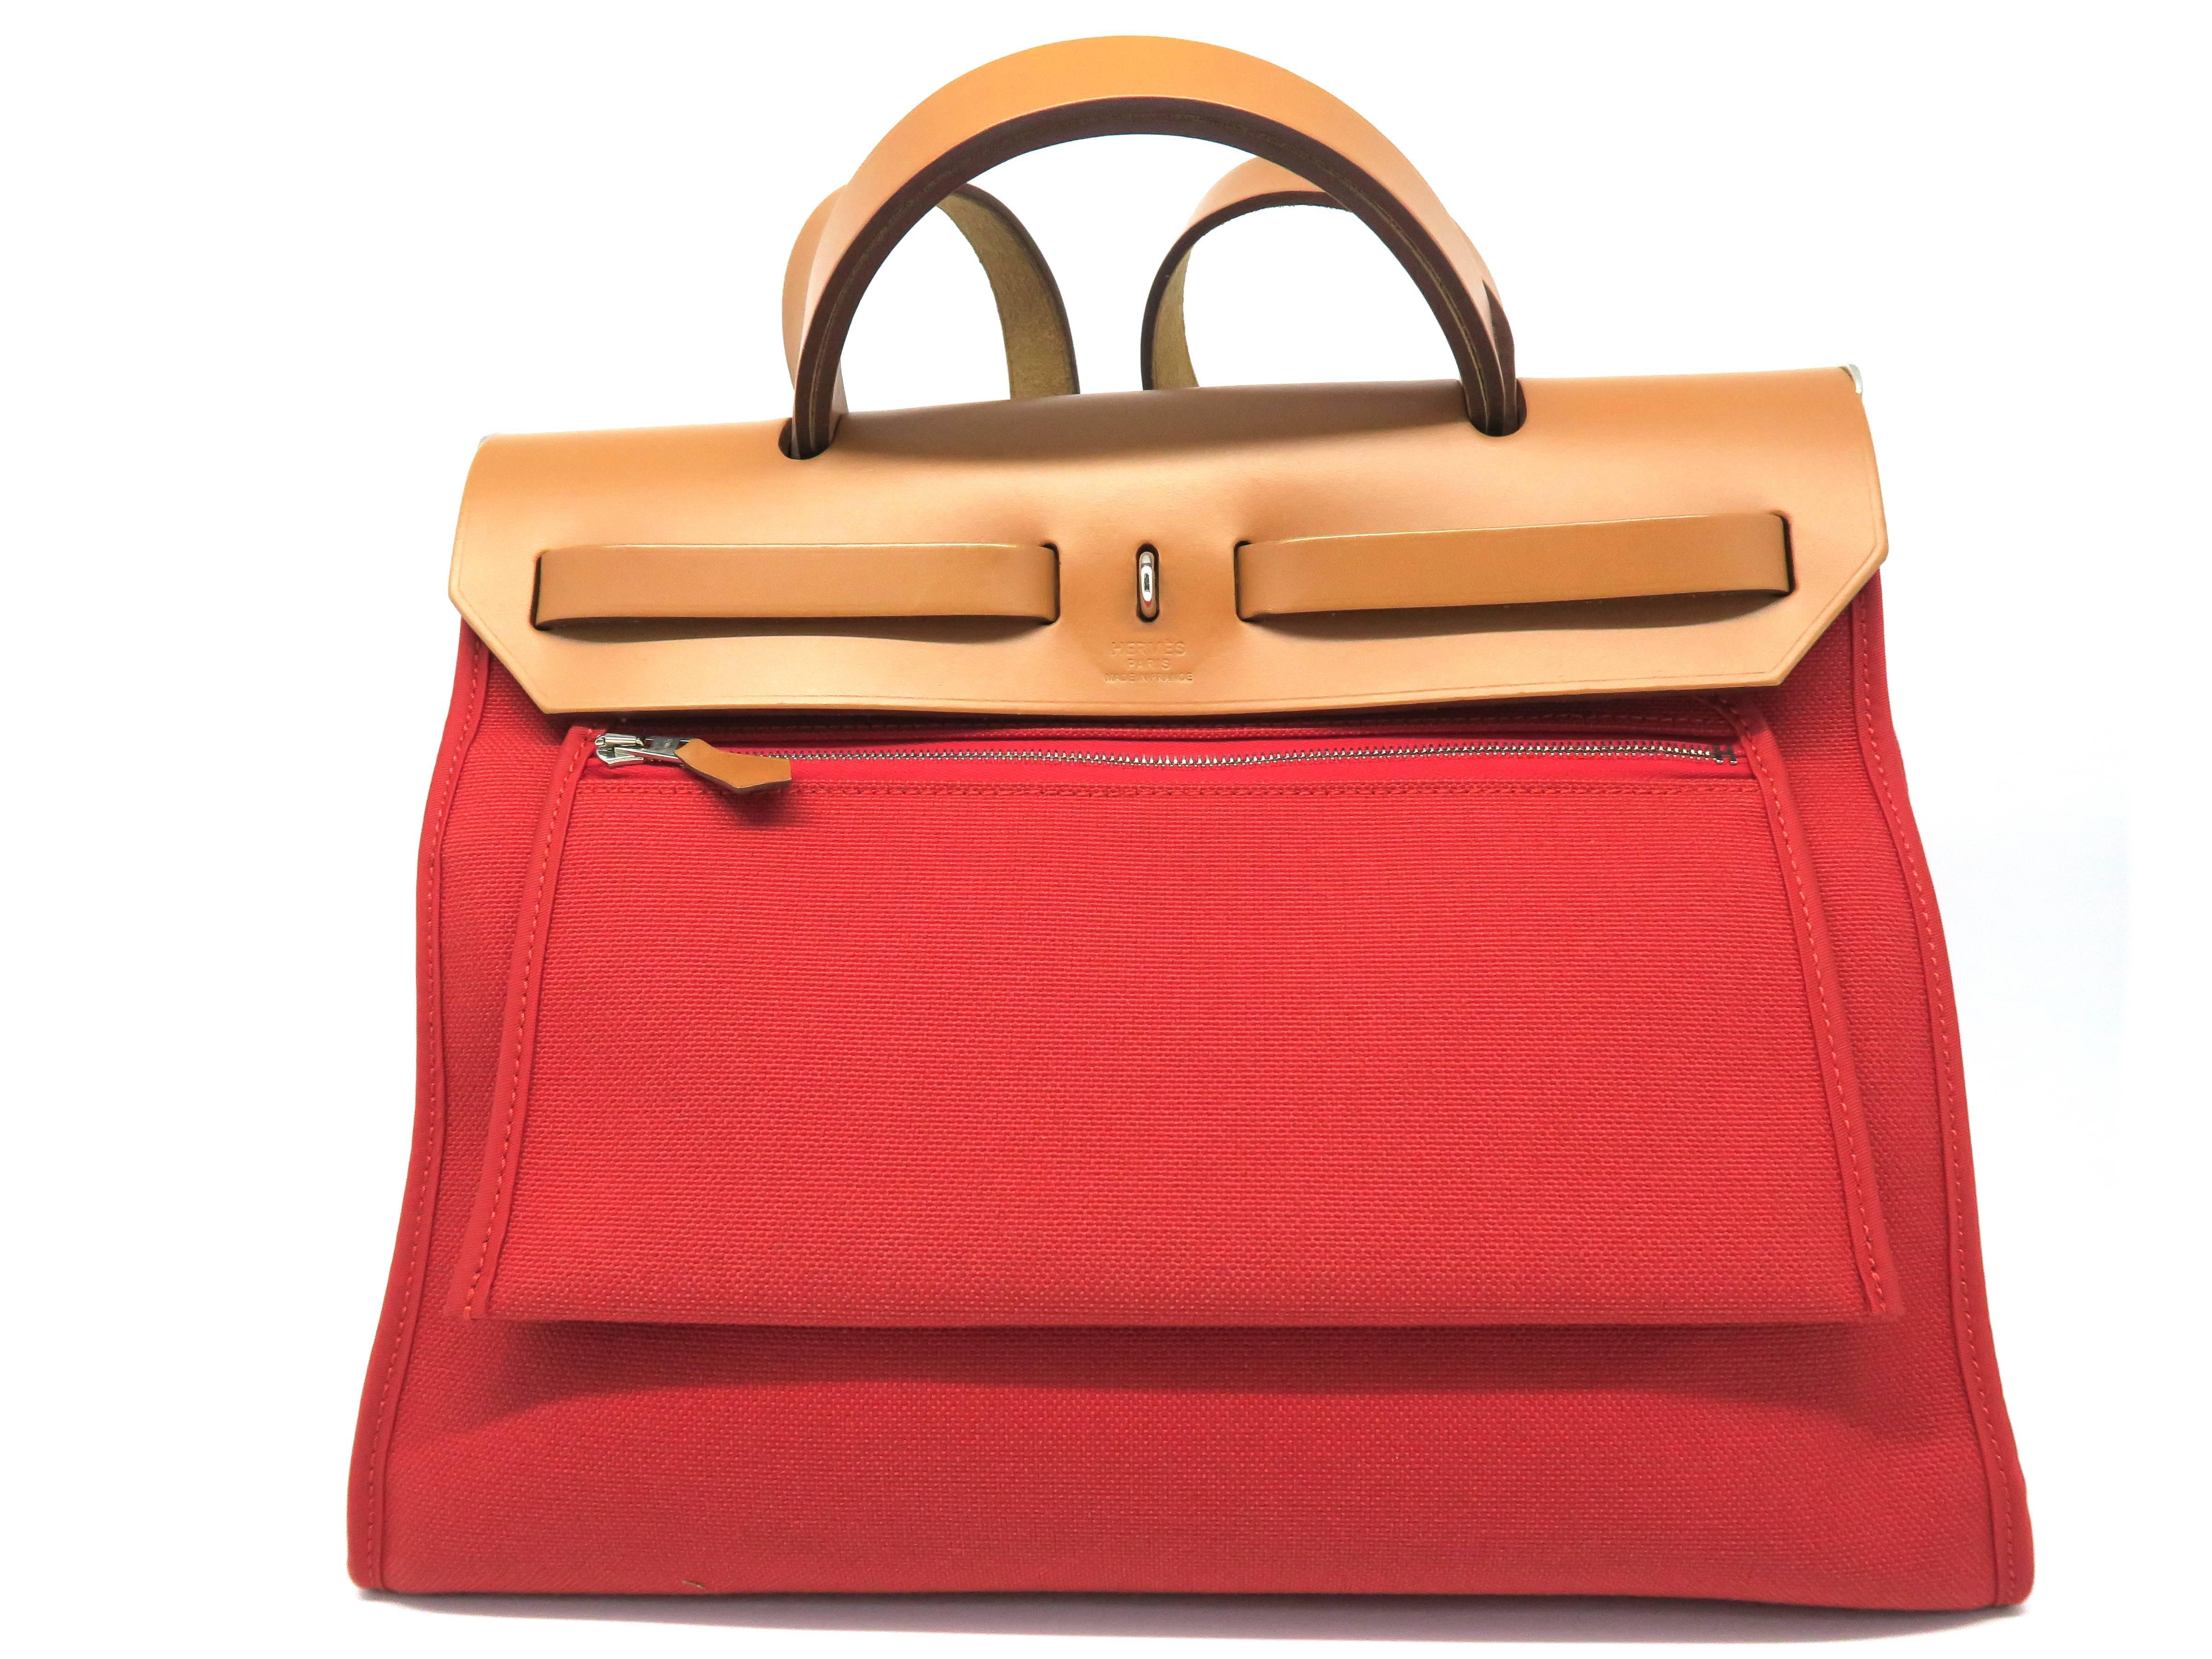 red satchel bag